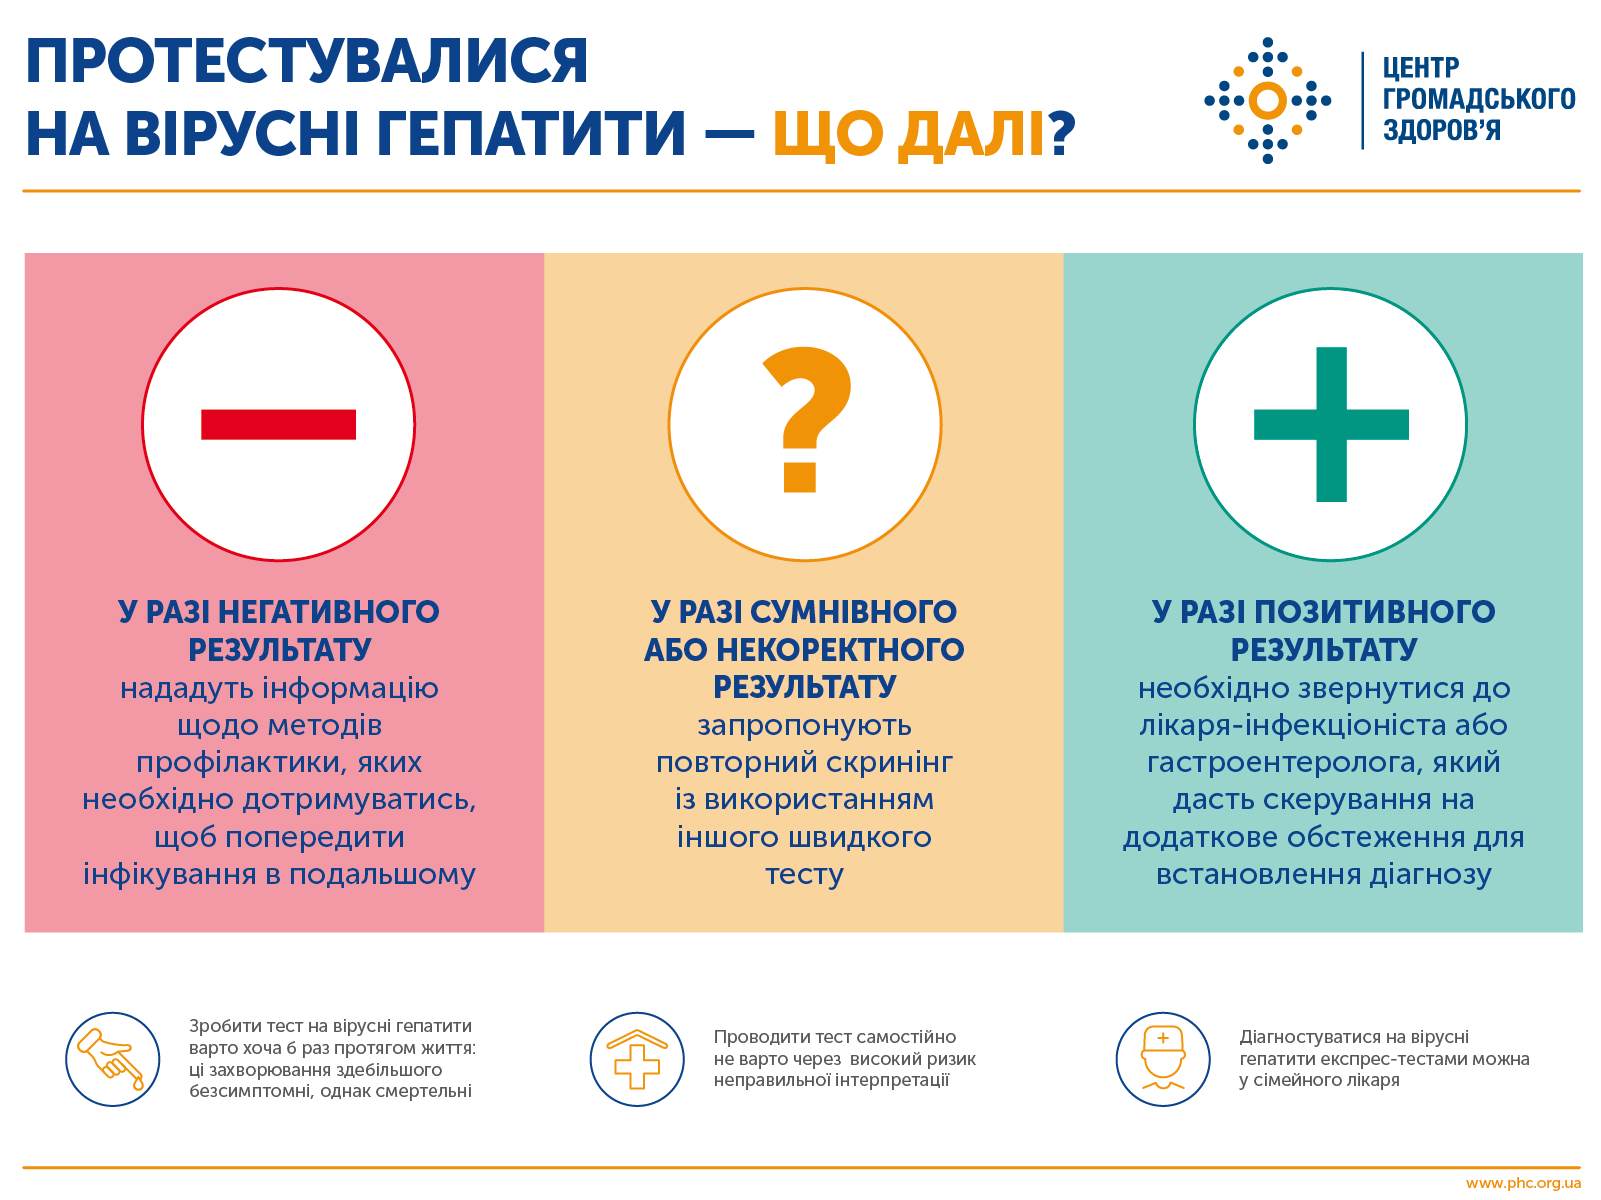 Кому в Украине нужно сдавать тесты на гепатиты раз в год - Рекомендации ЦОЗ